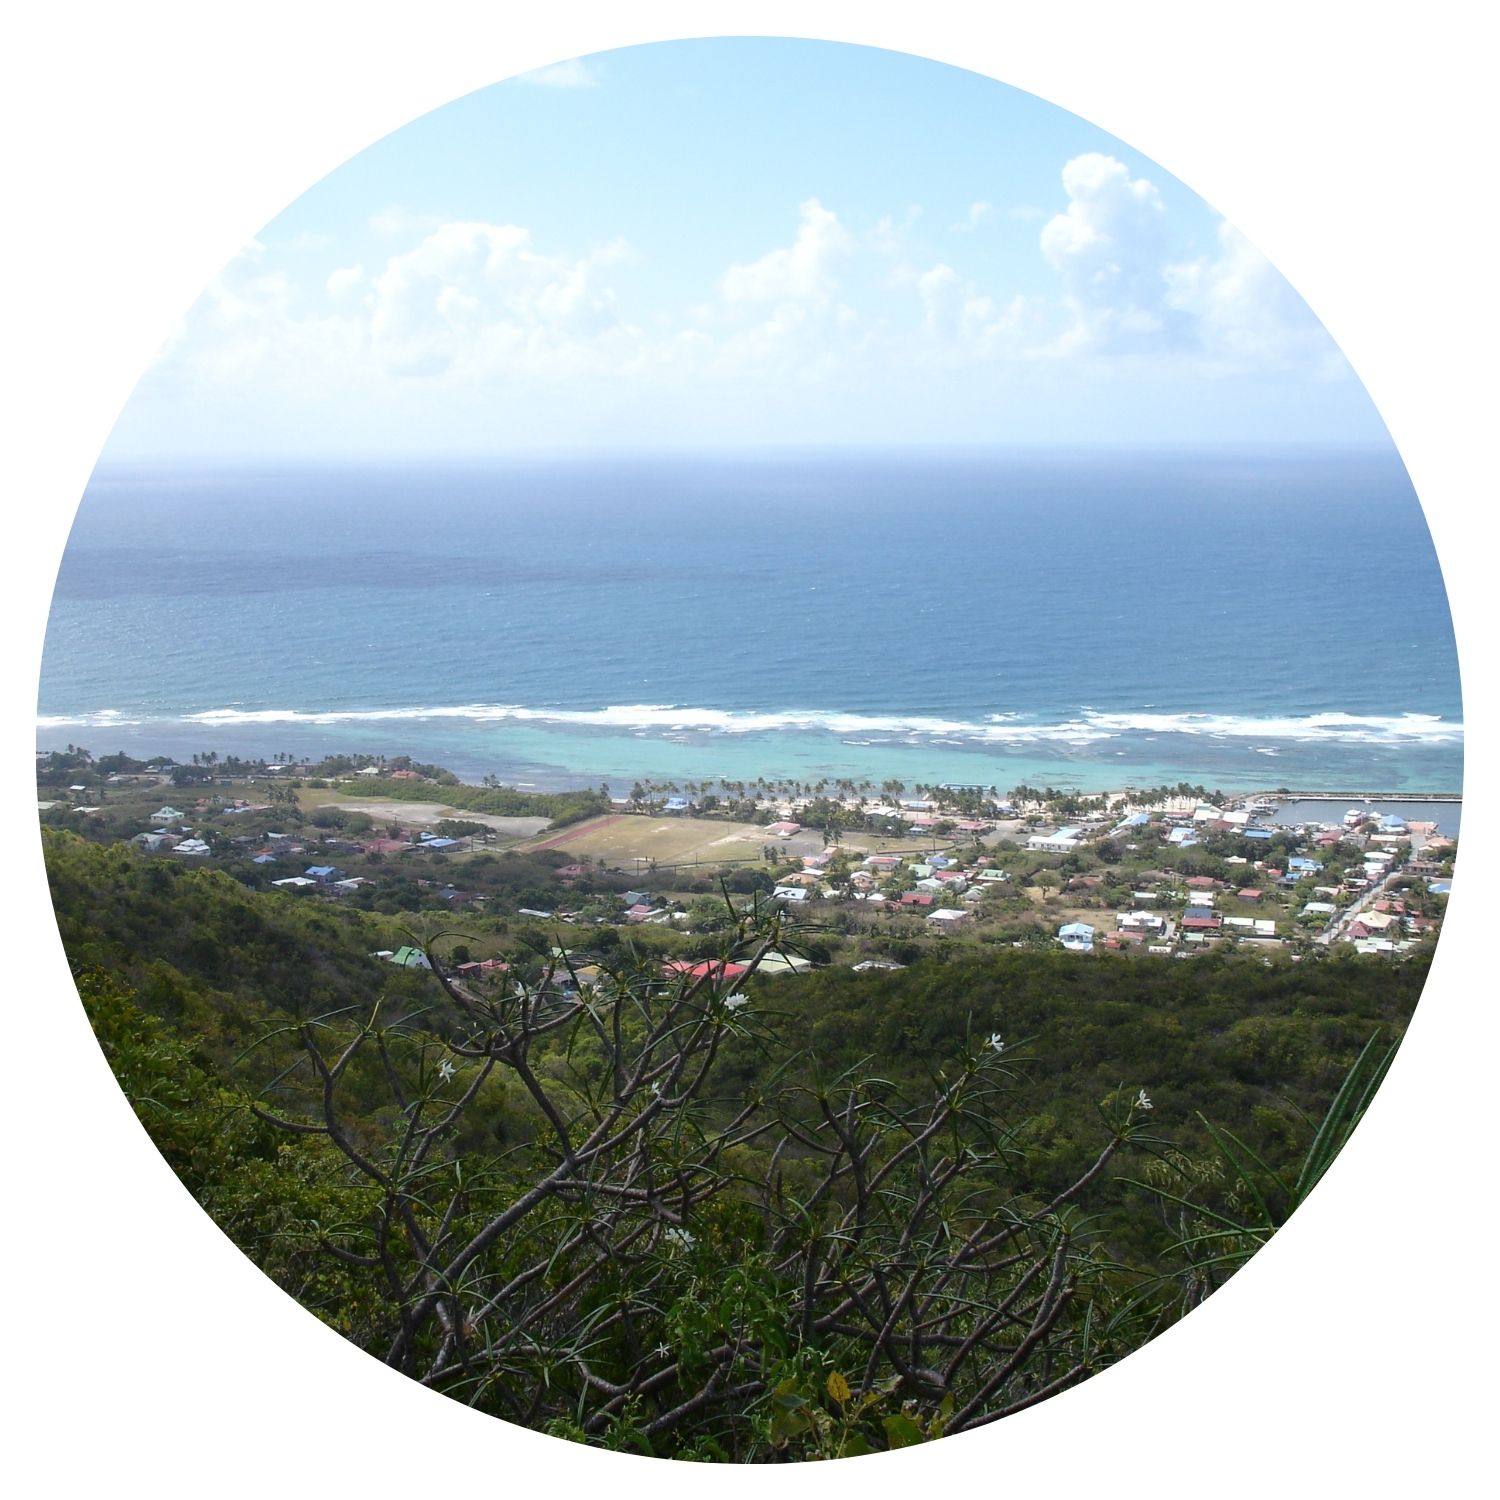 Vue panoramique depuis une montagne sur la belle plage de Guadeloupe, montrant la mer turquoise, les villages côtiers et le paysage verdoyant environnant.